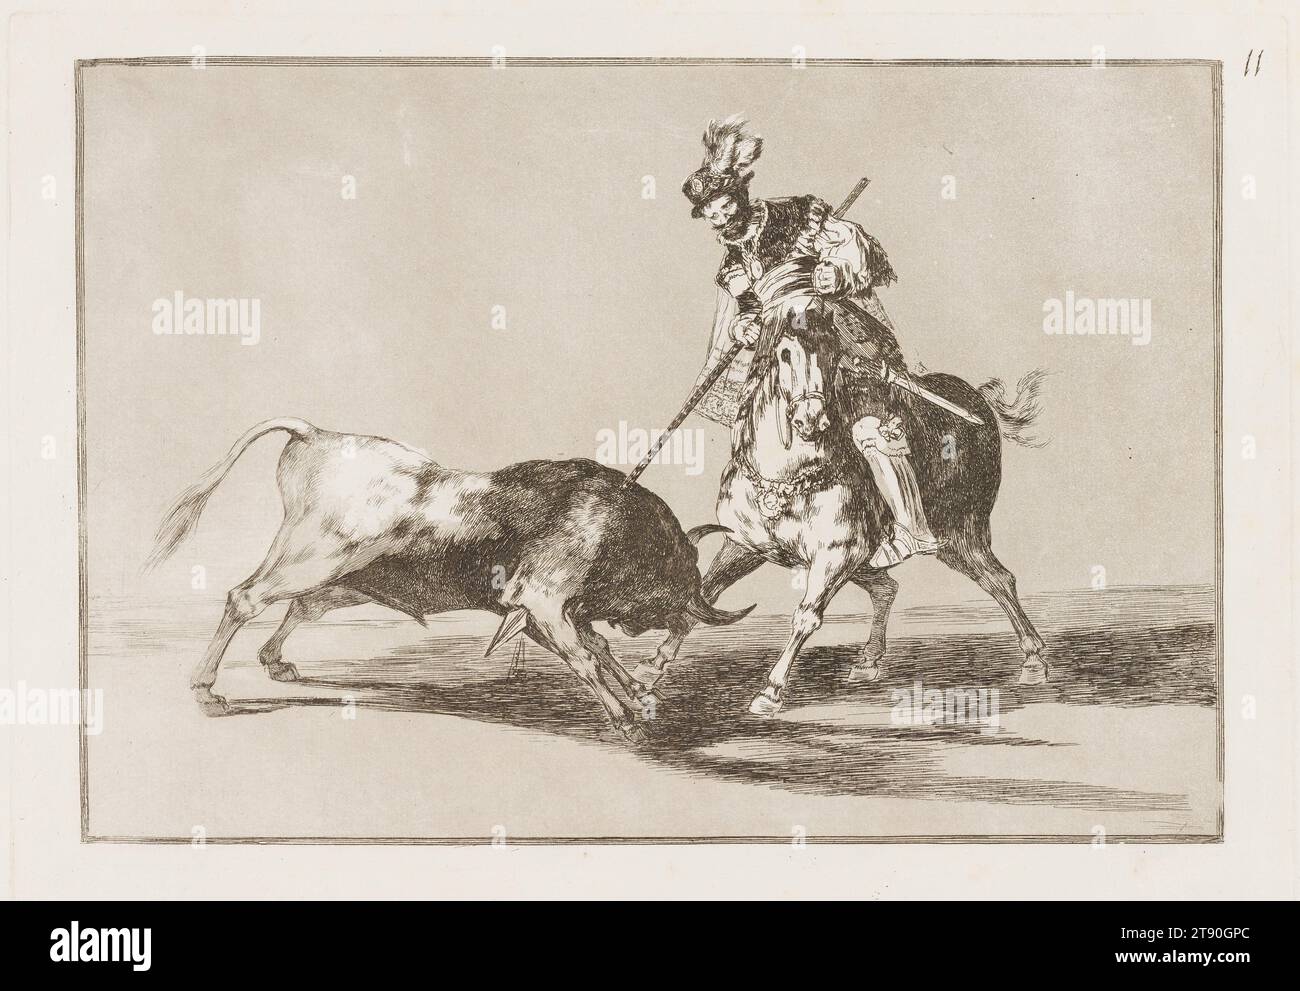 El Cid Campeador lanceado otro toro (El Cid Campeador Speearing another Bulle), 1816, Francisco José de Goya y Lucientes, Spanisch, 1746–1828, 8 7/16 x 12 5/16 Zoll. (21,43 x 31,27 cm) (Bild)9 13/16 x 13 13/16 Zoll (24,92 x 35,08 cm) (Platte)11 3/8 x 16 1/4 Zoll (28,89 x 41,28 cm) (Blatt), Ätzen, brünierte Aquatinze, Trockenspitze und BURIN, Spanien, im 19. Jahrhundert zeichnet Goya in der 33er-Serie „Tauromaquia“ die Geschichte des Stierkampfes in Spanien nach, von Männern auf der Jagd auf offenen Feldern bis hin zu dem modernen, ritualisierten Spektakel, das es im 18. Jahrhundert wurde. Er erfindet einen Teil der Geschichte des Sports Stockfoto